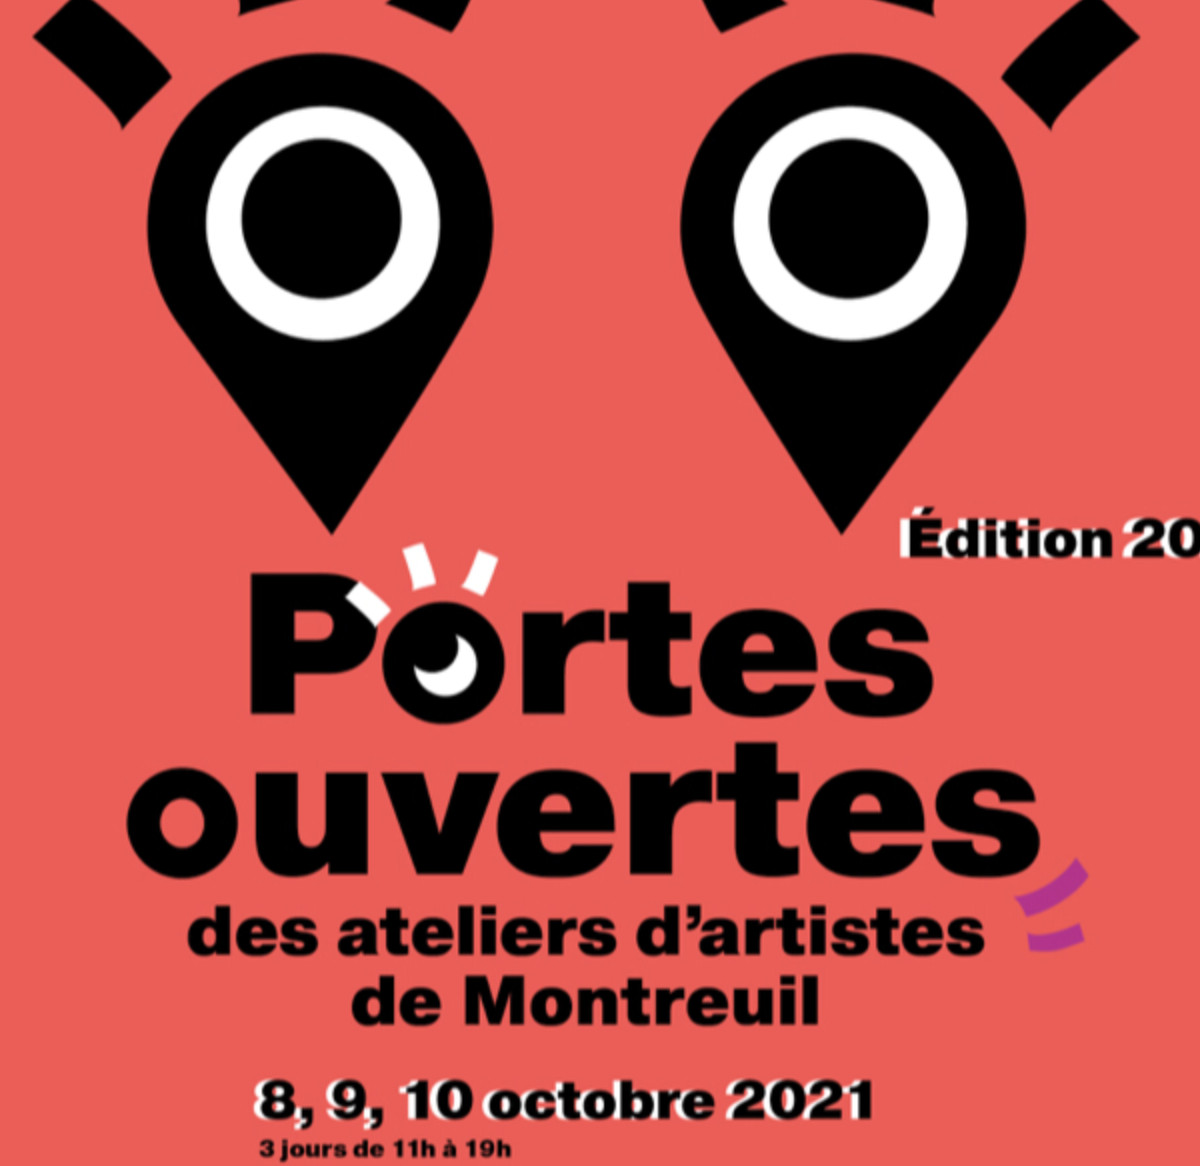 Les portes ouvertes des artistes de Montreuil sur le site d’ARTactif